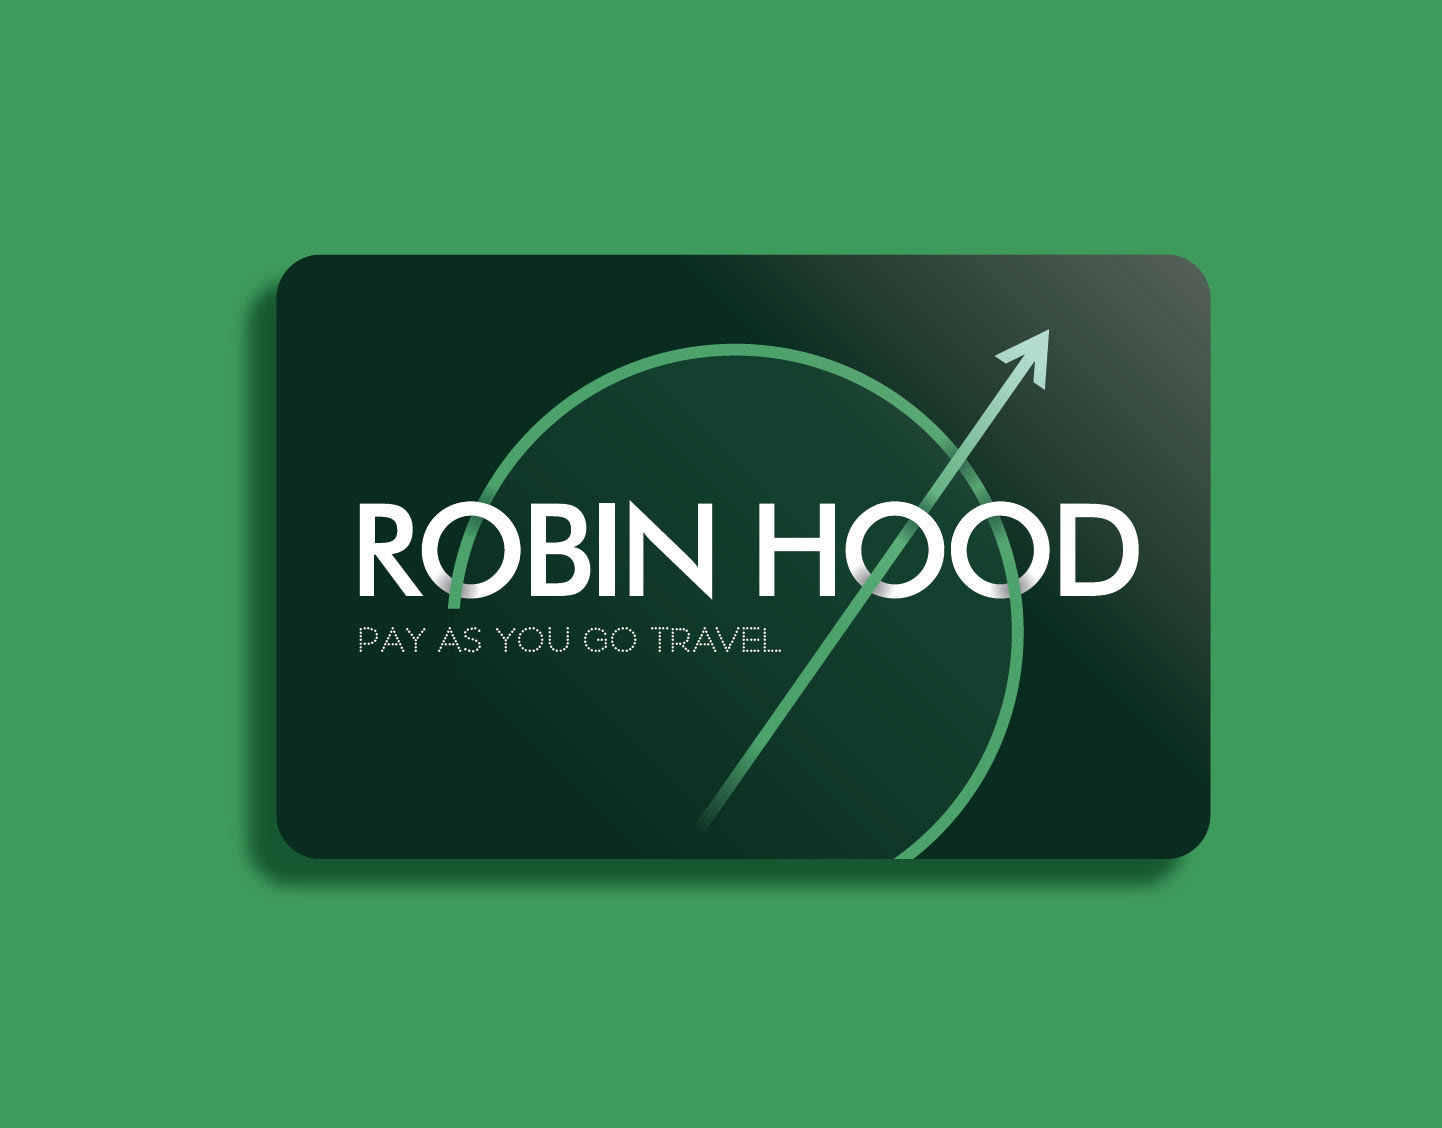 Hood robinhood ipo my husband is financially irresponsible